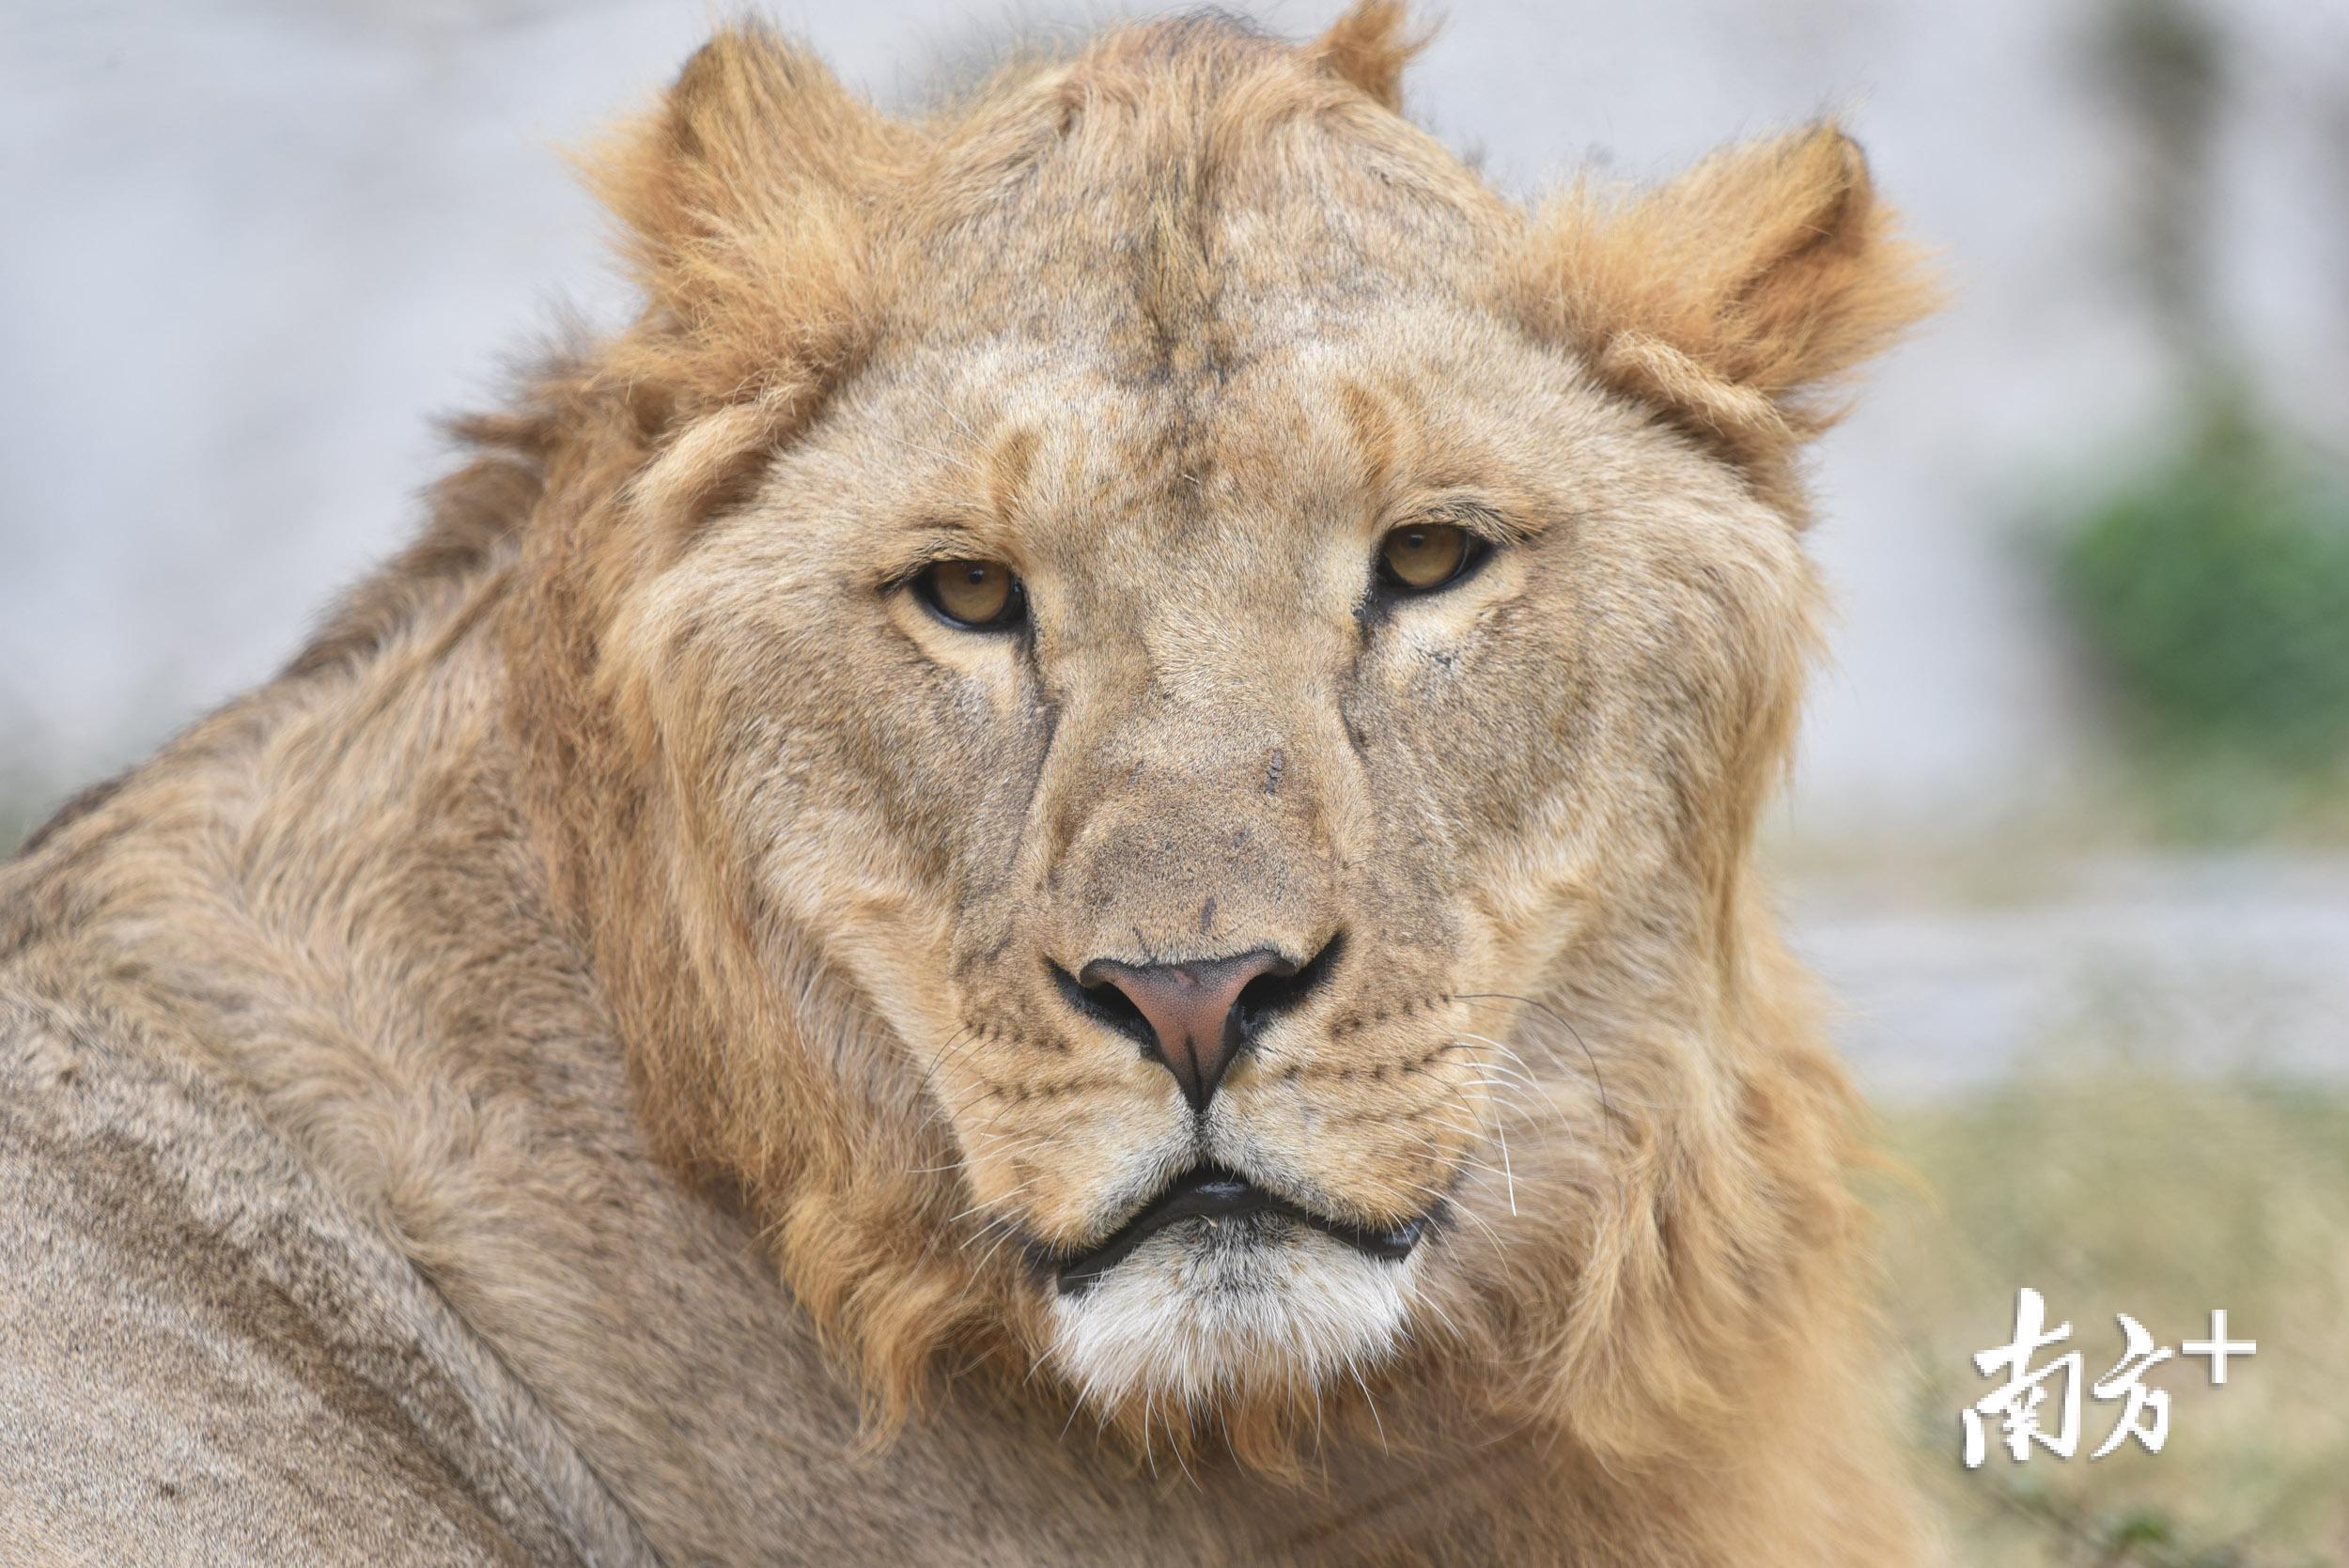 看兽中之王秀恩爱深圳野生动物园8只非洲狮首次亮相